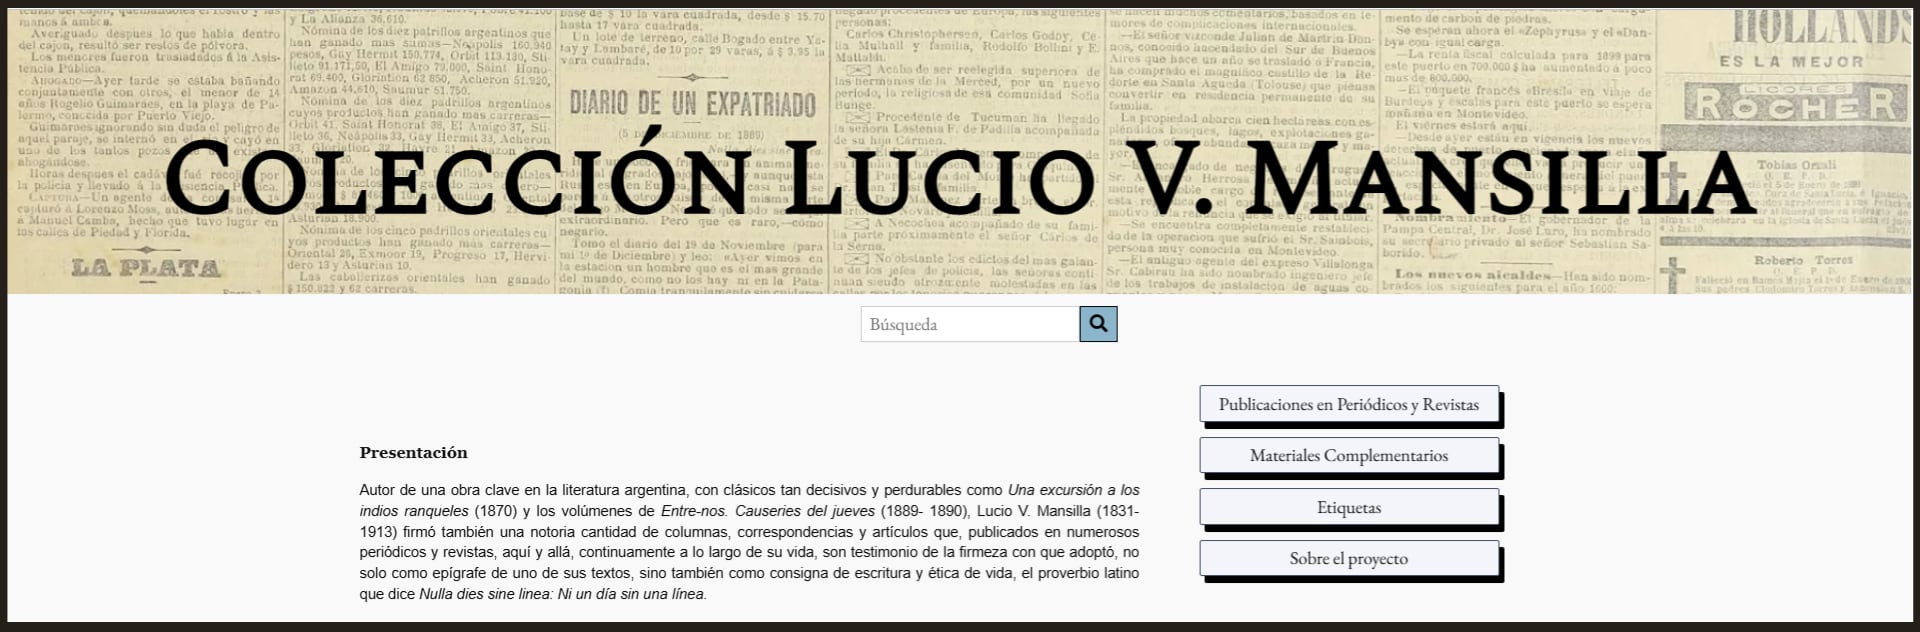 La Colección Lucio V. Mansilla ya puede ser consultado y navegada en internet